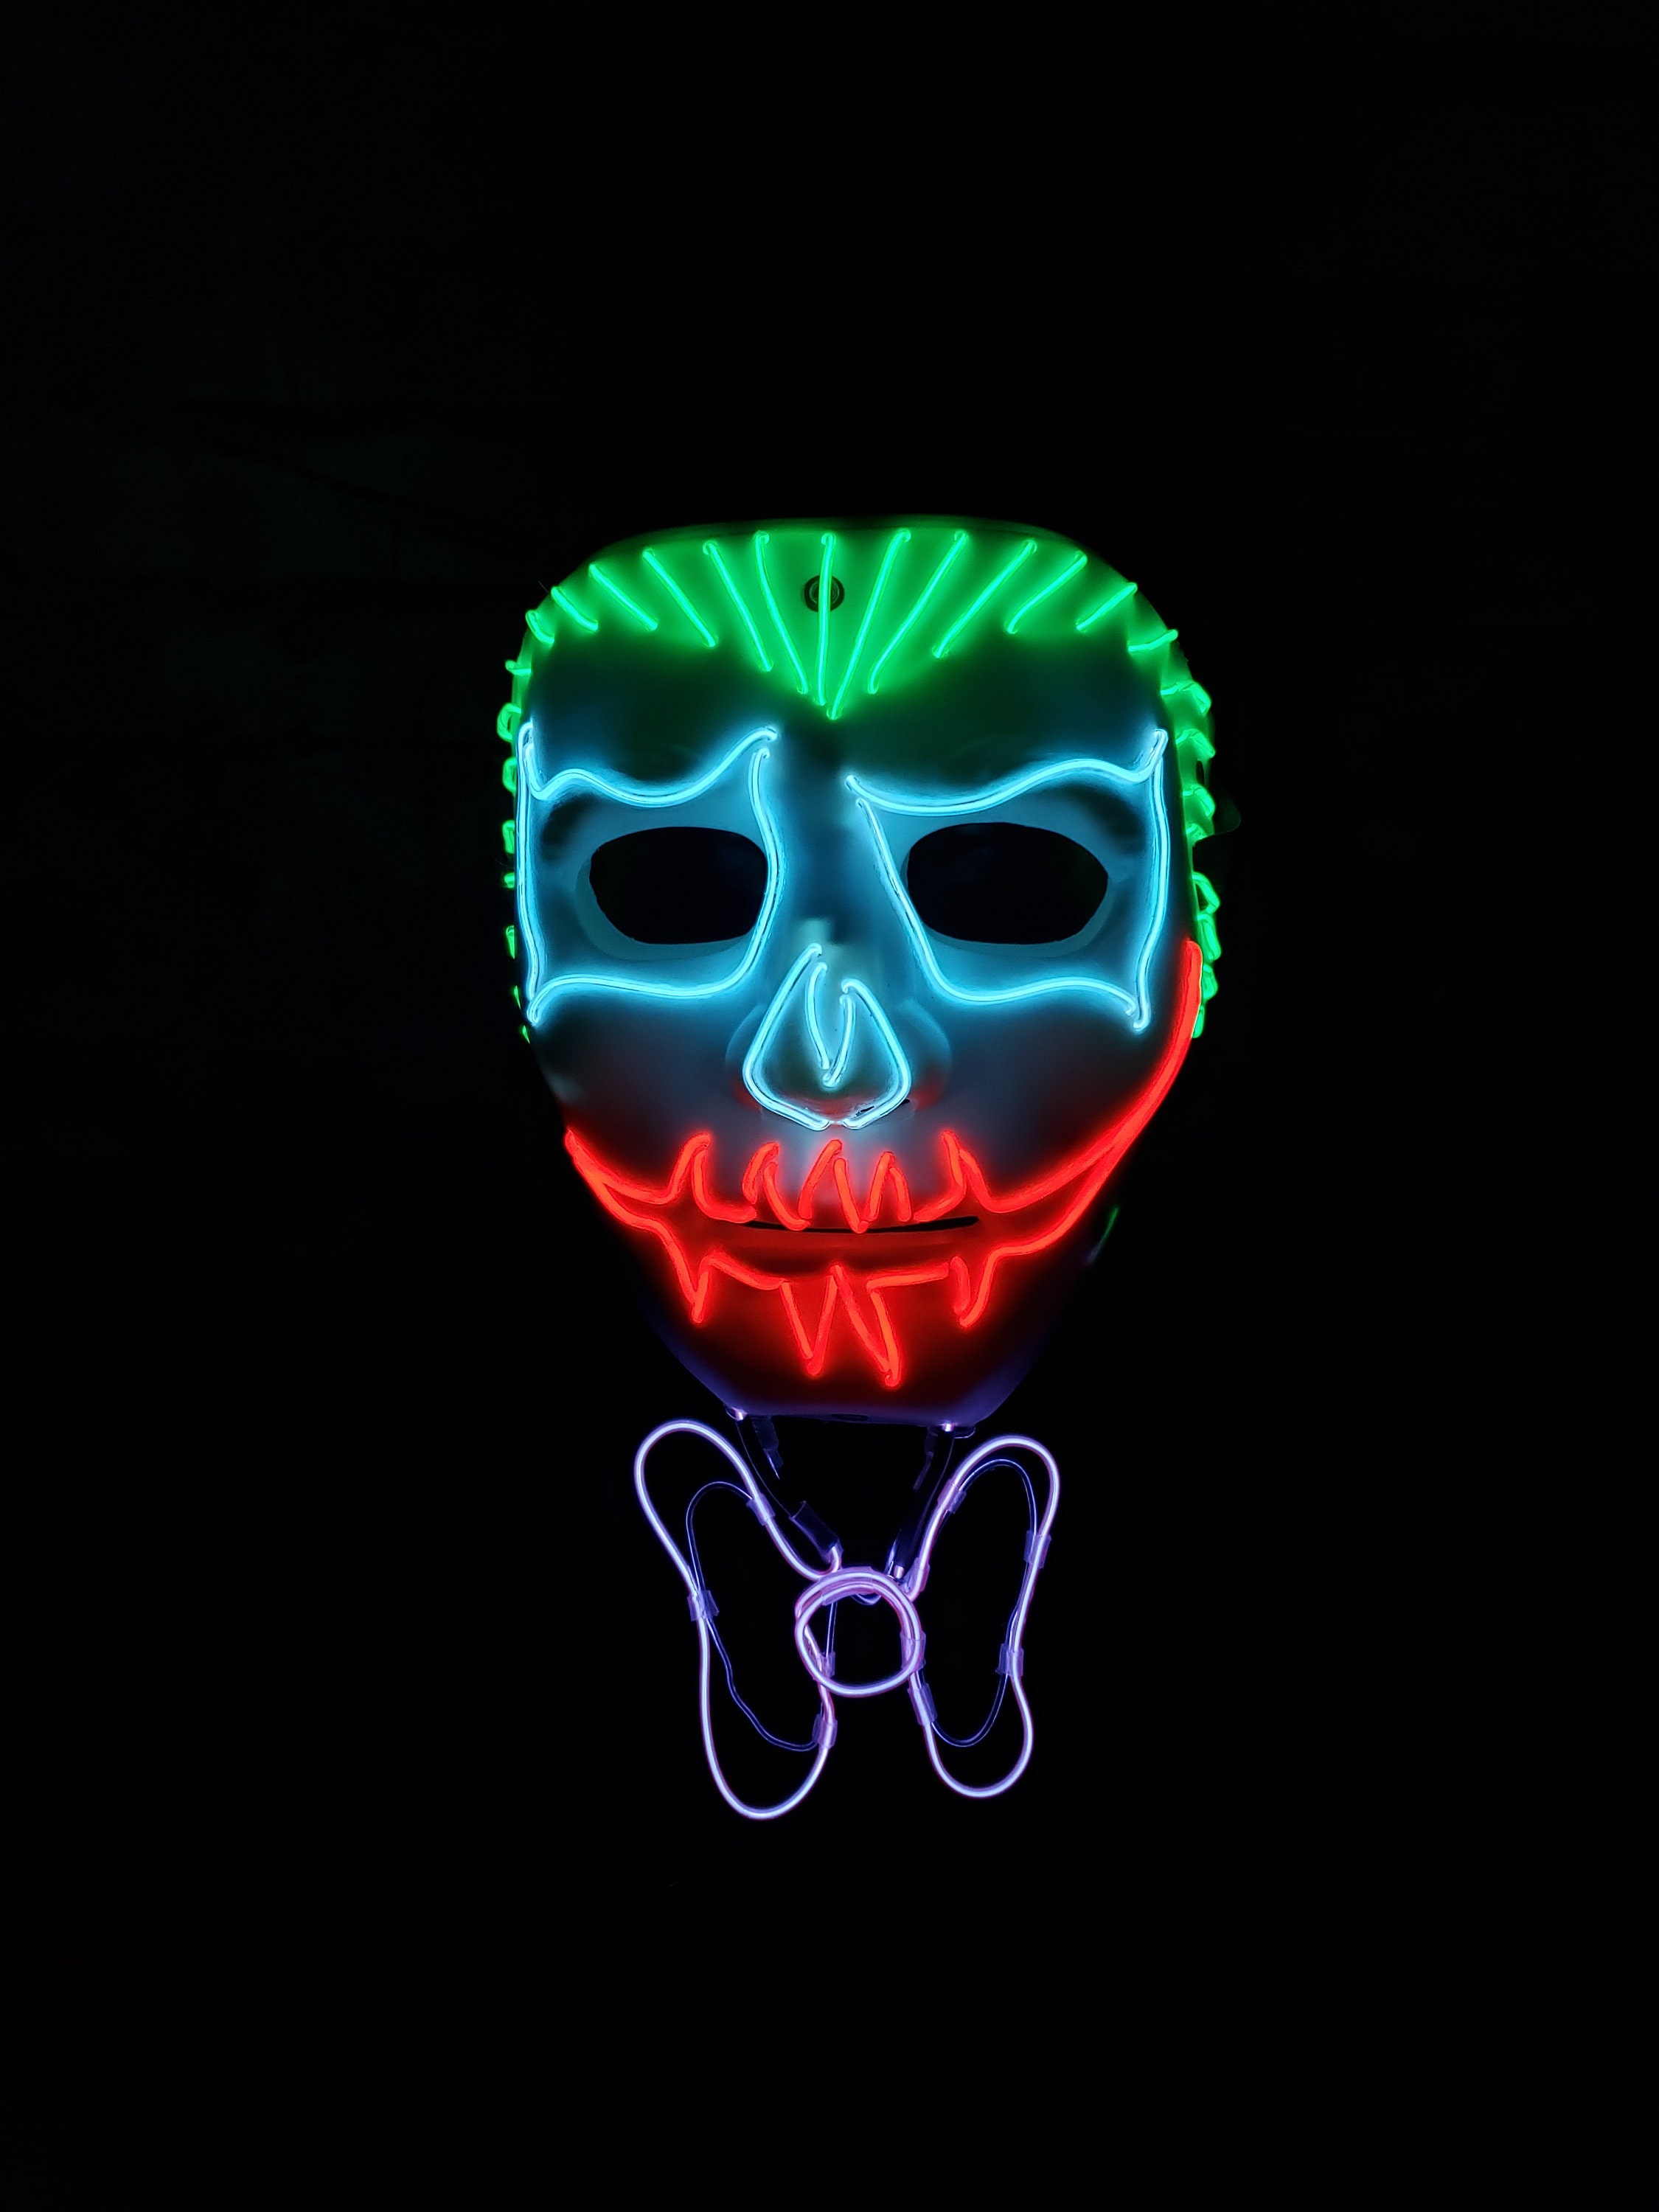 JOKER LED Light up Maskel Wireskeleton3-dfestivalrave | Etsy